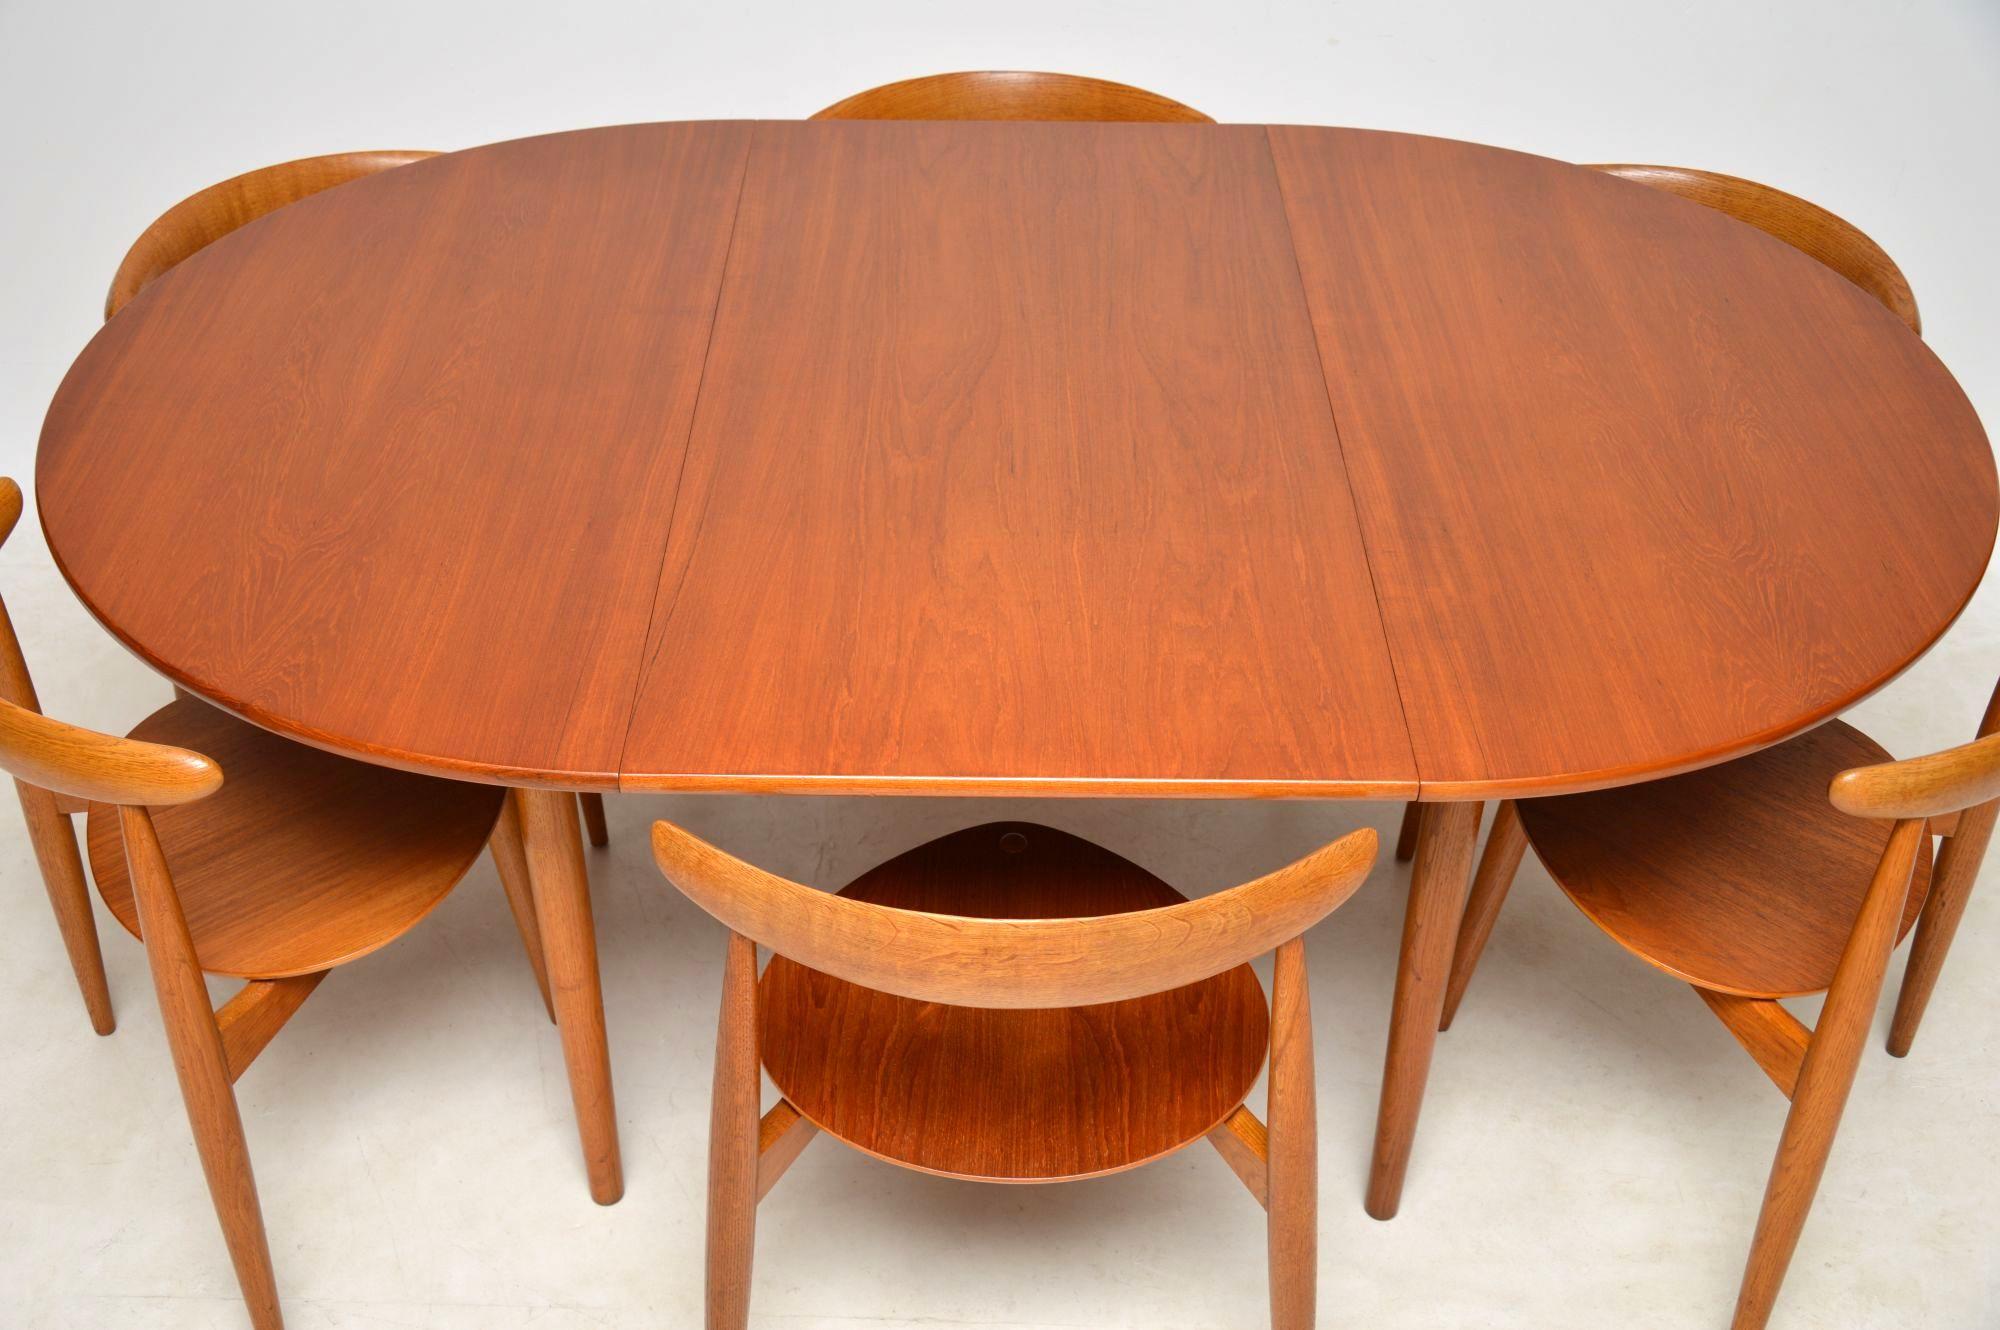 1950s Danish Teak & Oak Dining Table & Chairs by Hans Wegner for Fritz Hansen 4